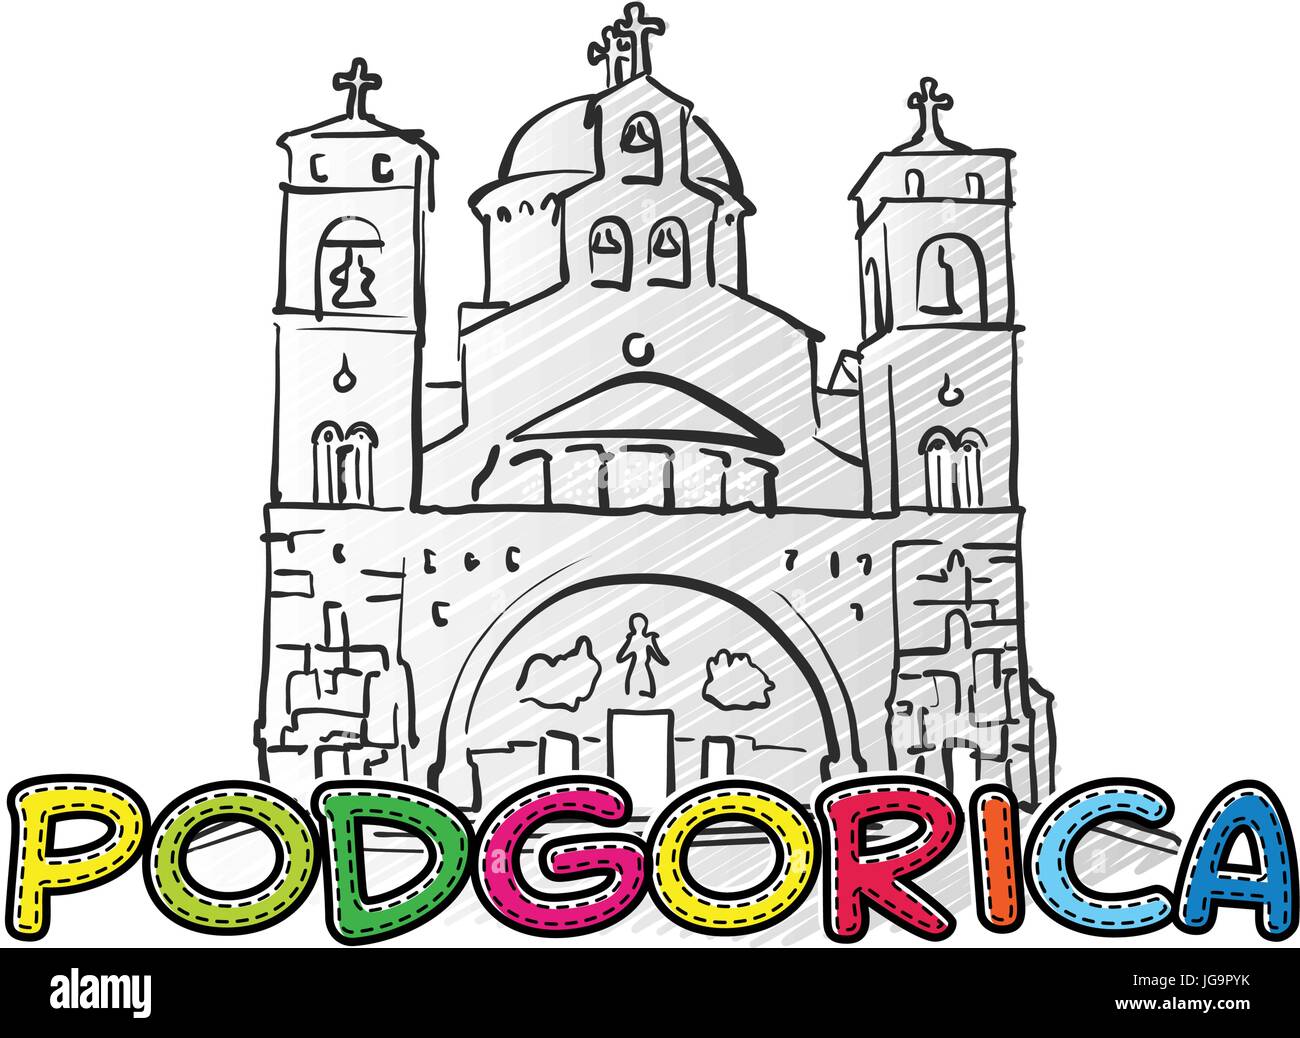 Podgorica schöne skizzierte Ikone, Famaous handgezeichneten Wahrzeichen, Stadt Name Schriftzug, Vektor-illustration Stock Vektor